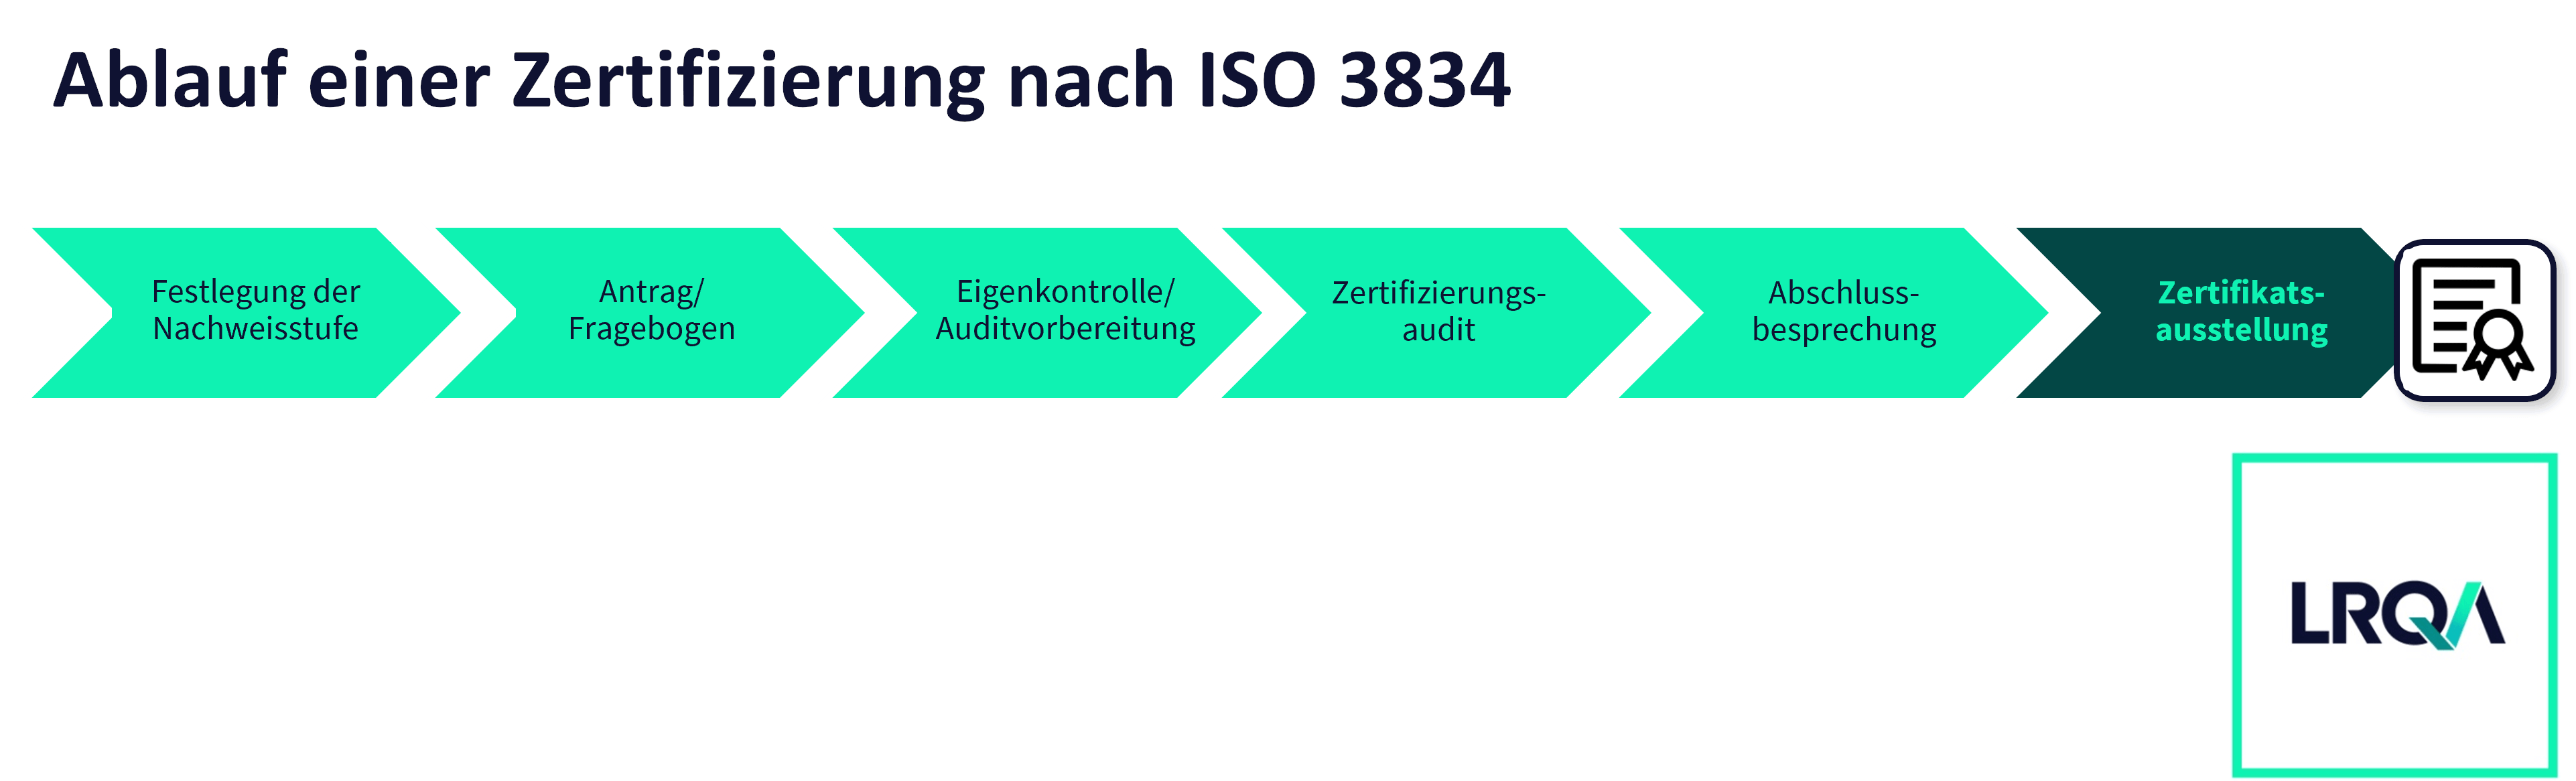 Darstellung des Ablaufs einer ISO 3834 Zertifizierung